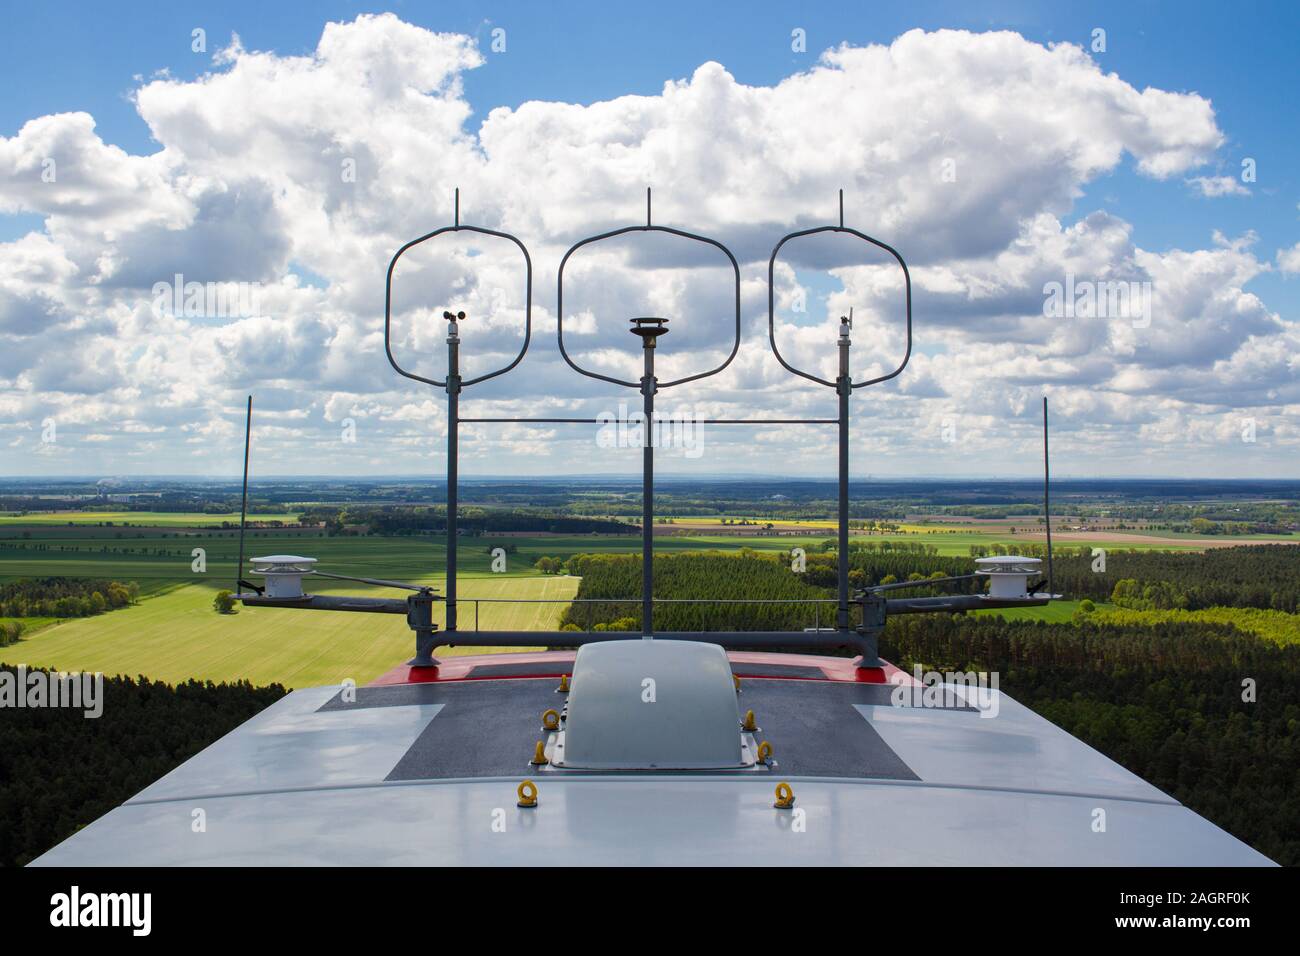 Messgeräte (Cup Anemometer, Ultraschallanemometer, windfahne) und Aviation Lichter auf dem Maschinenhausdach einer Windkraftanlage mit Feldern und Cloud Stockfoto